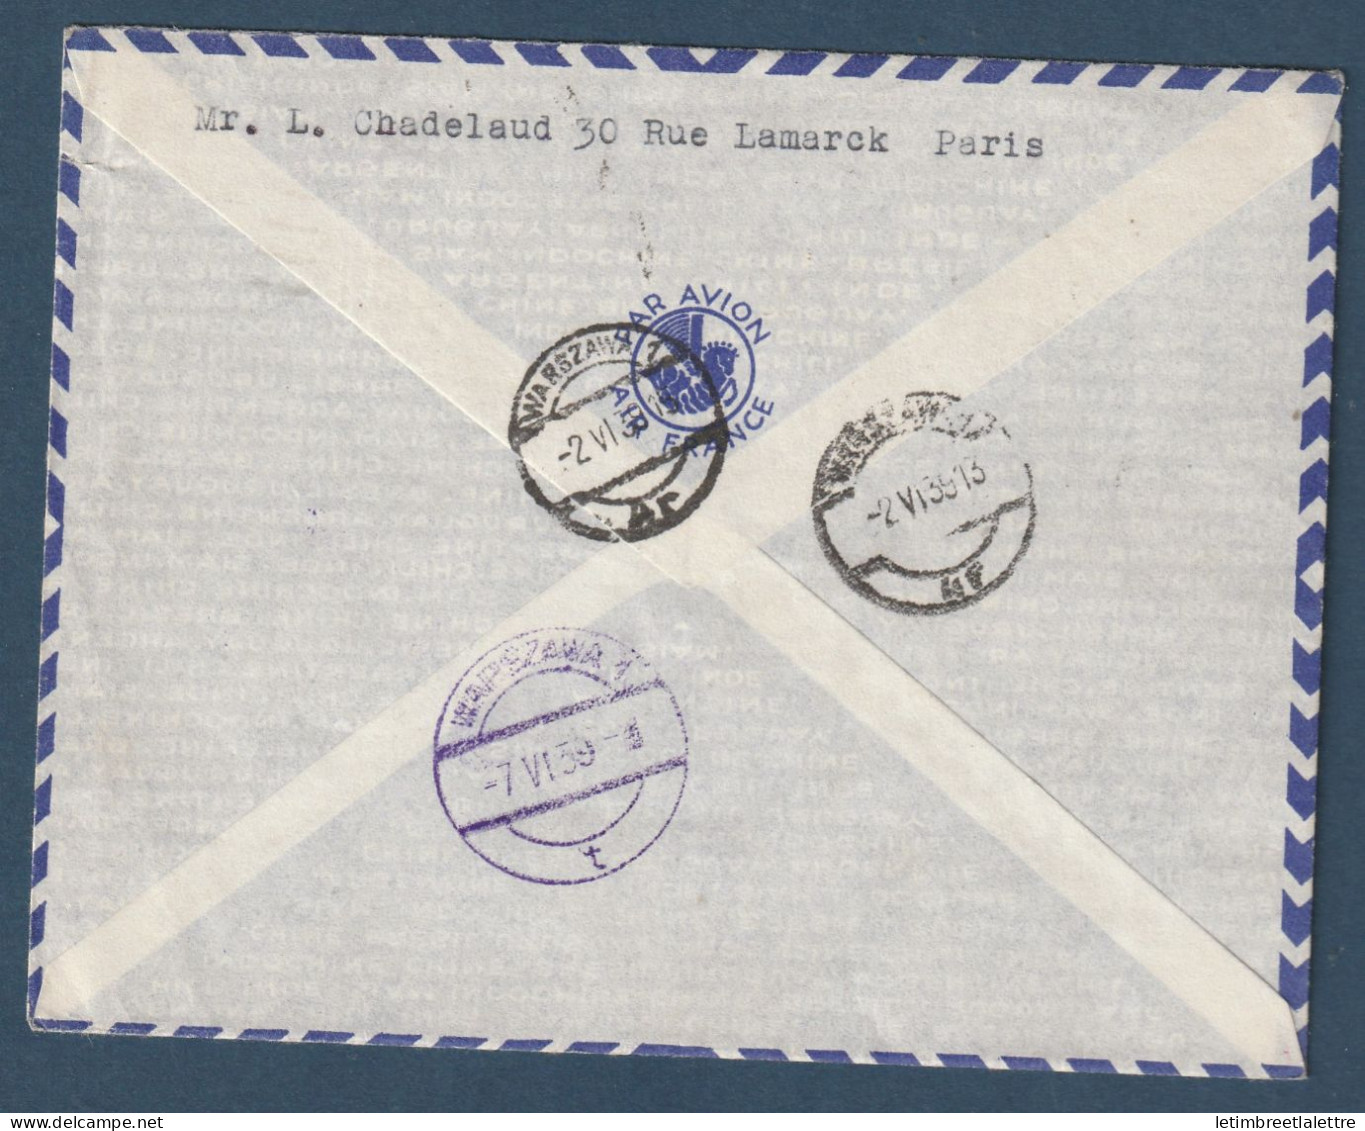 France - Service Postale Aérien Sans Surtaxe - France - Finlande - France Pologne - Retour à L'envoyeur - 1er Juin 1939 - Primi Voli